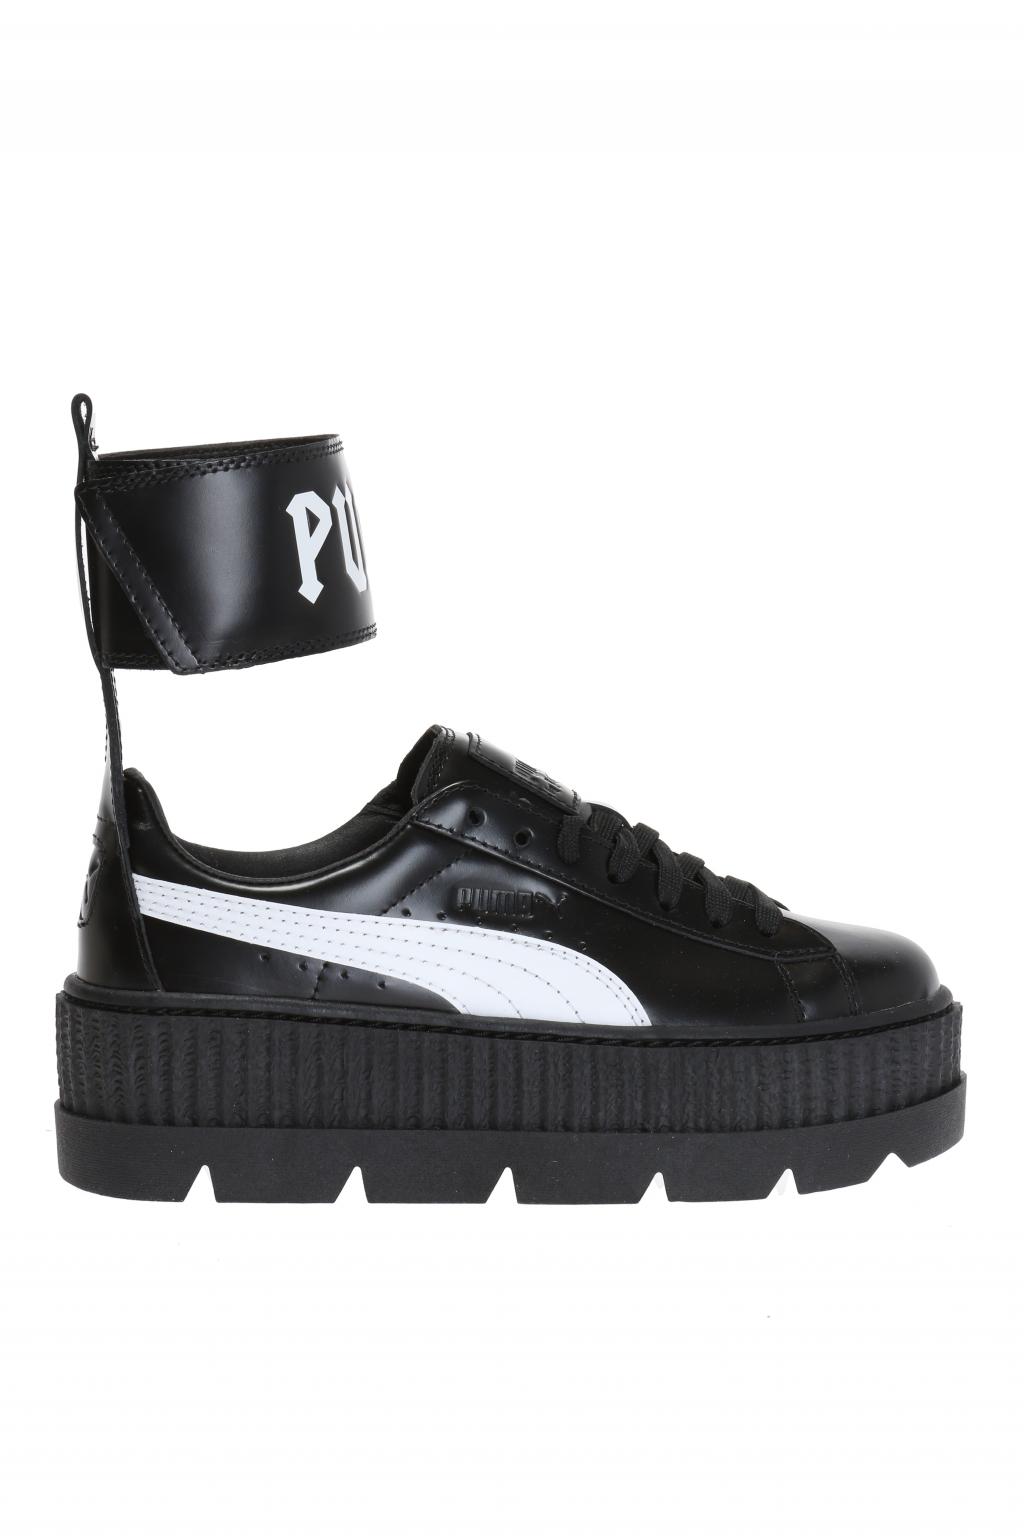 puma platform sneakers rihanna